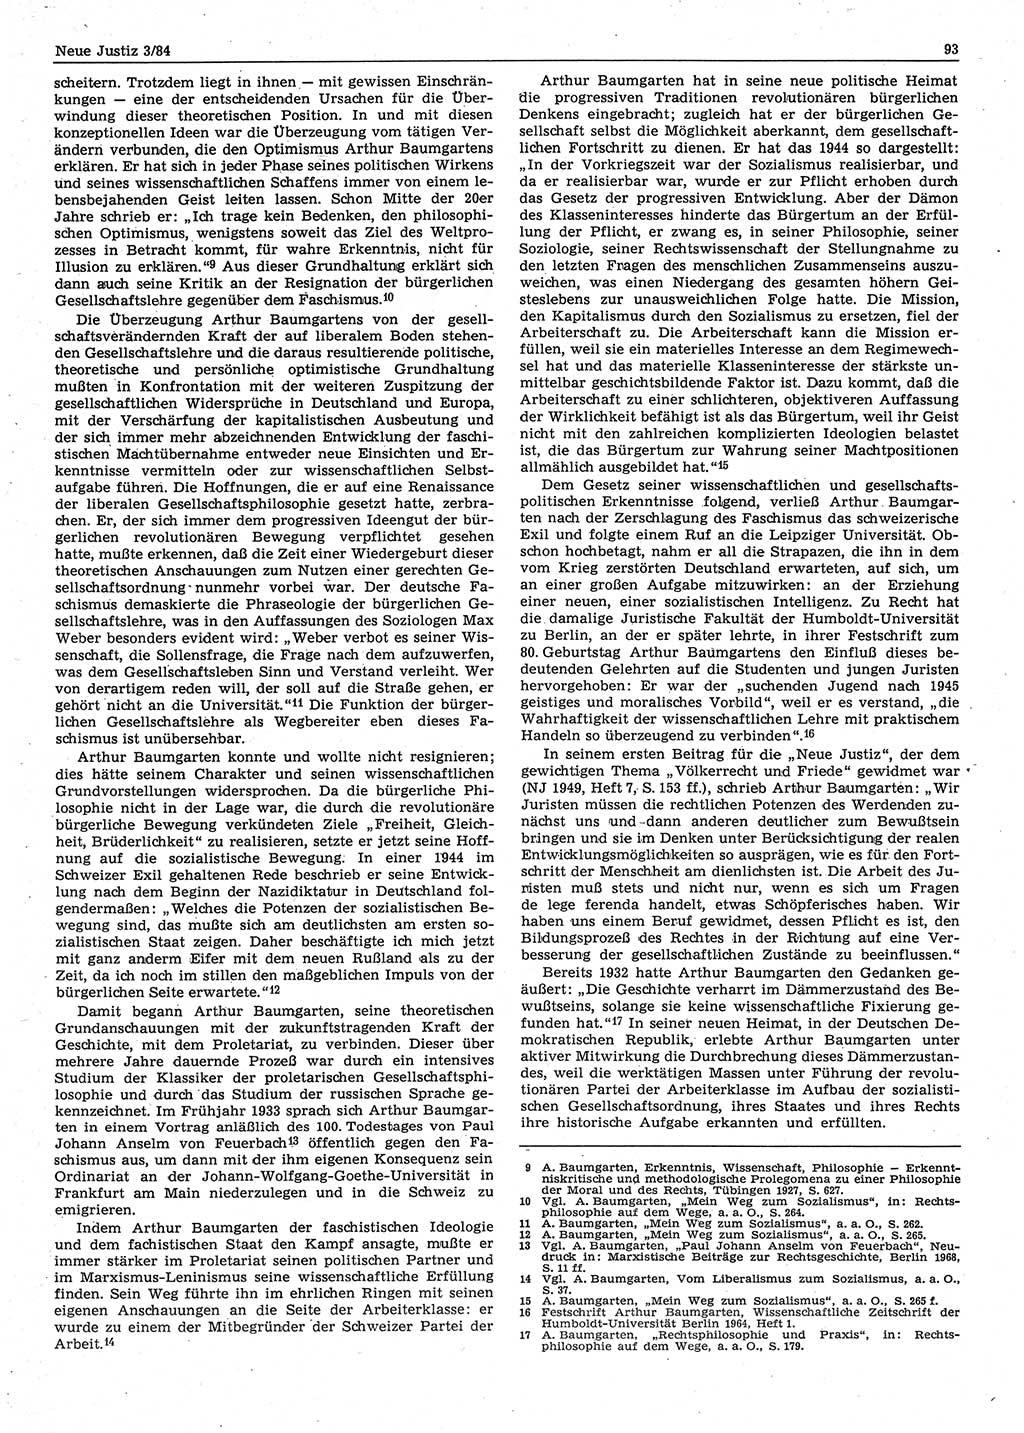 Neue Justiz (NJ), Zeitschrift für sozialistisches Recht und Gesetzlichkeit [Deutsche Demokratische Republik (DDR)], 38. Jahrgang 1984, Seite 93 (NJ DDR 1984, S. 93)